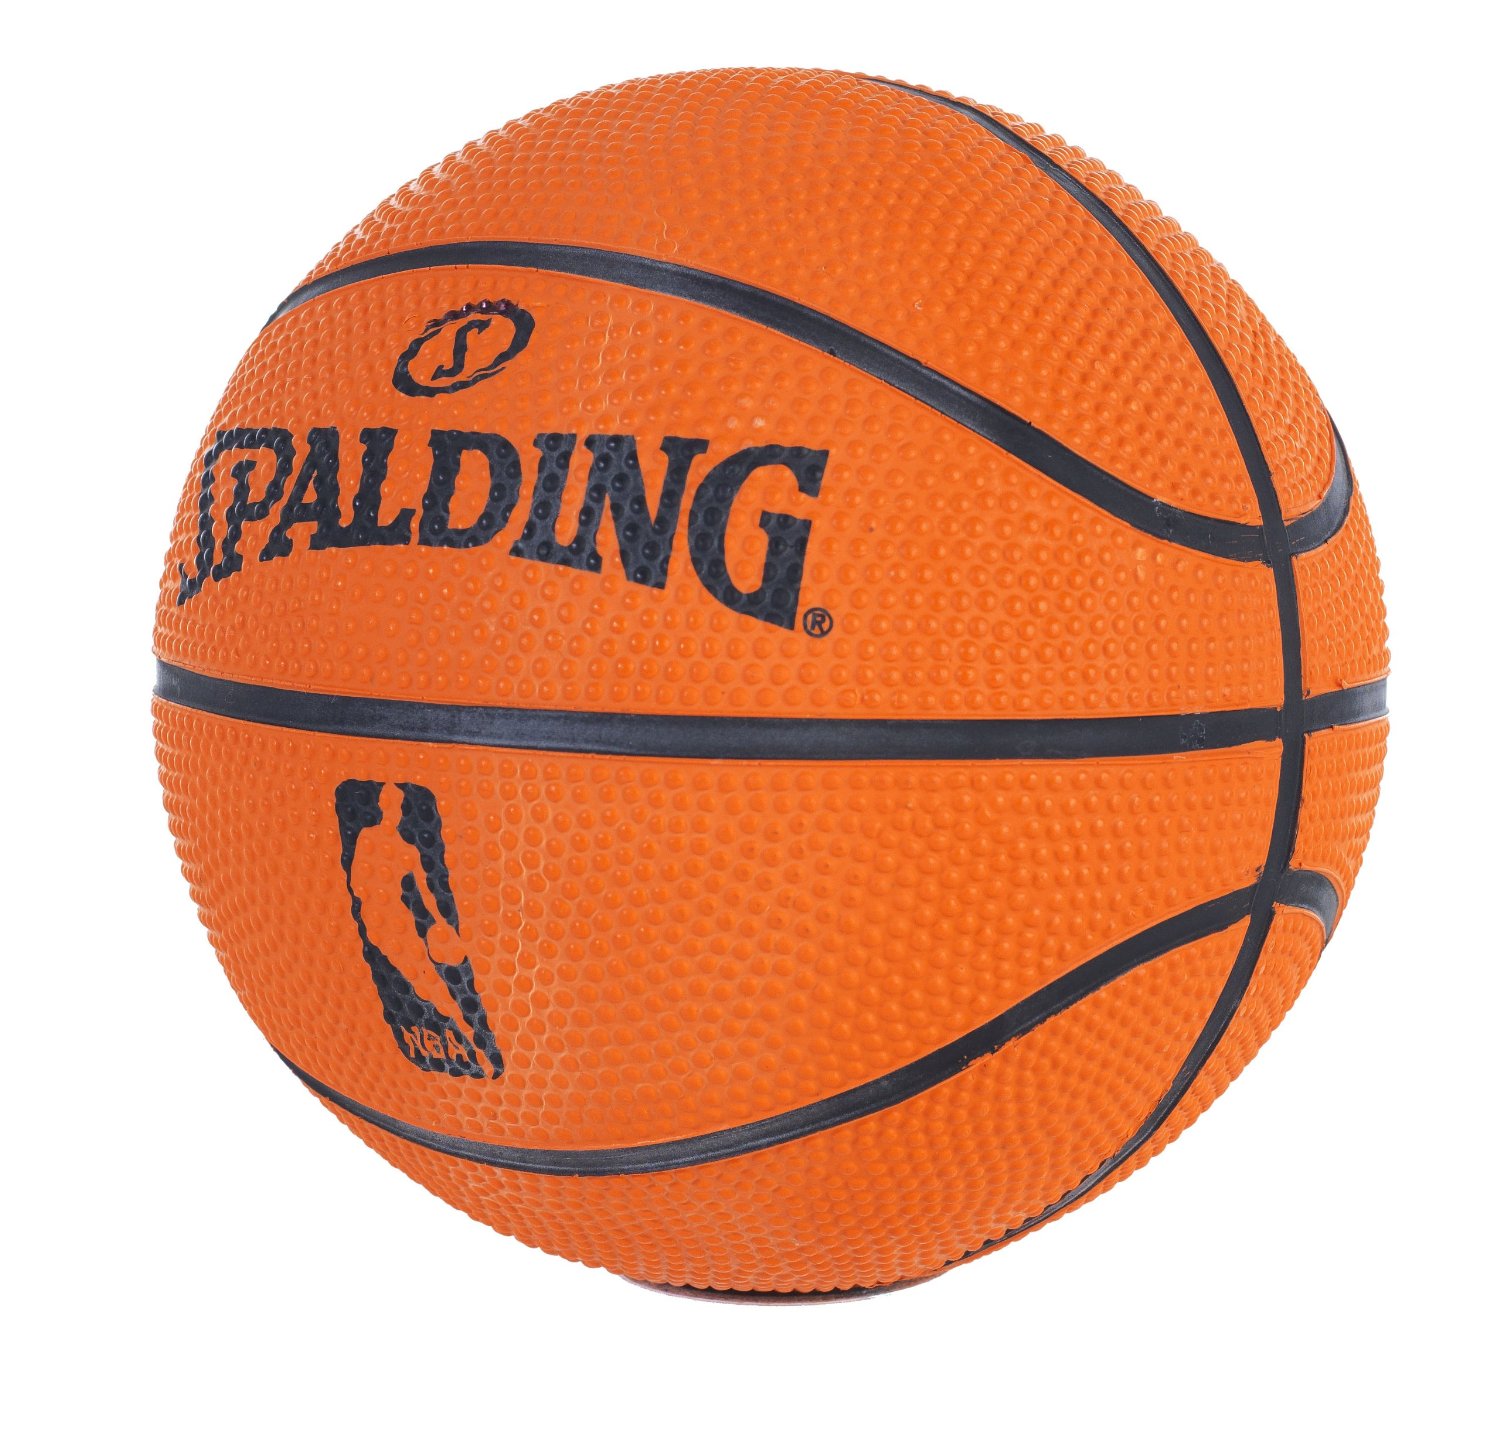 Спортивные магазины баскетбольные мячи. Мяч Spalding NBA. Мячи Ларсен баскетбольные Indoor. Slam баскетбольный мяч.